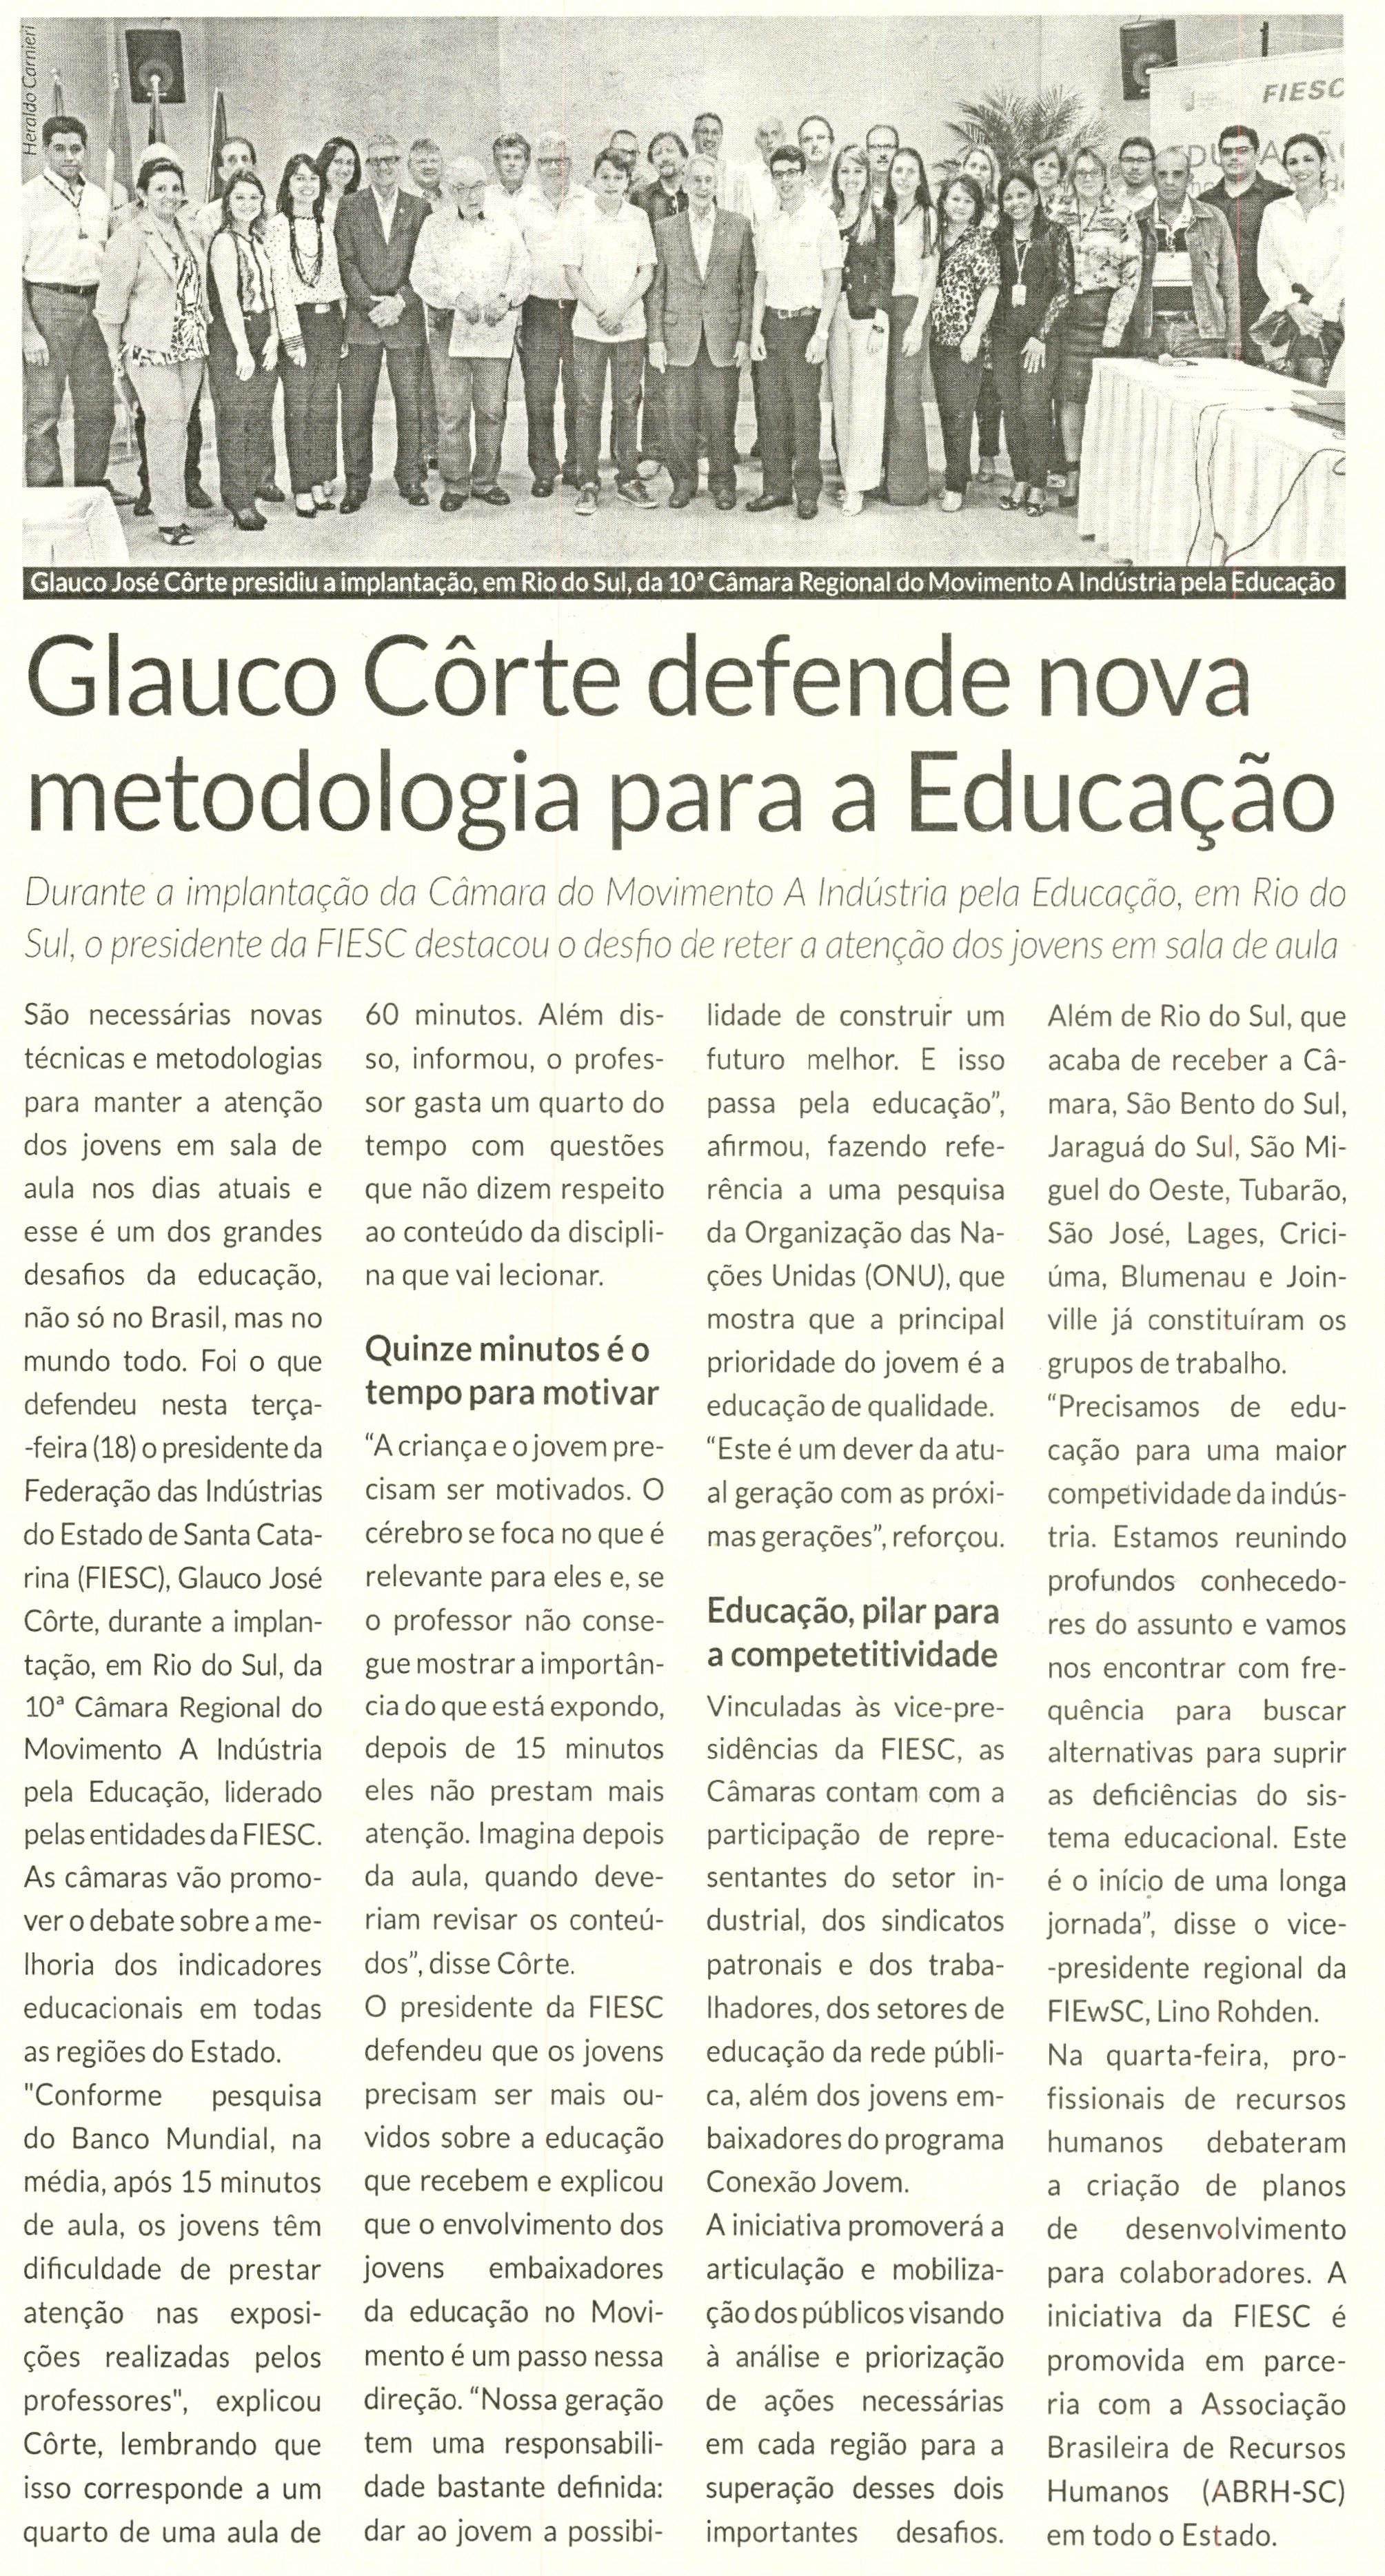 Título: Glauco Côrte defende nova metodologia para a Educação - Data: 19/08/2015 - Veículo: